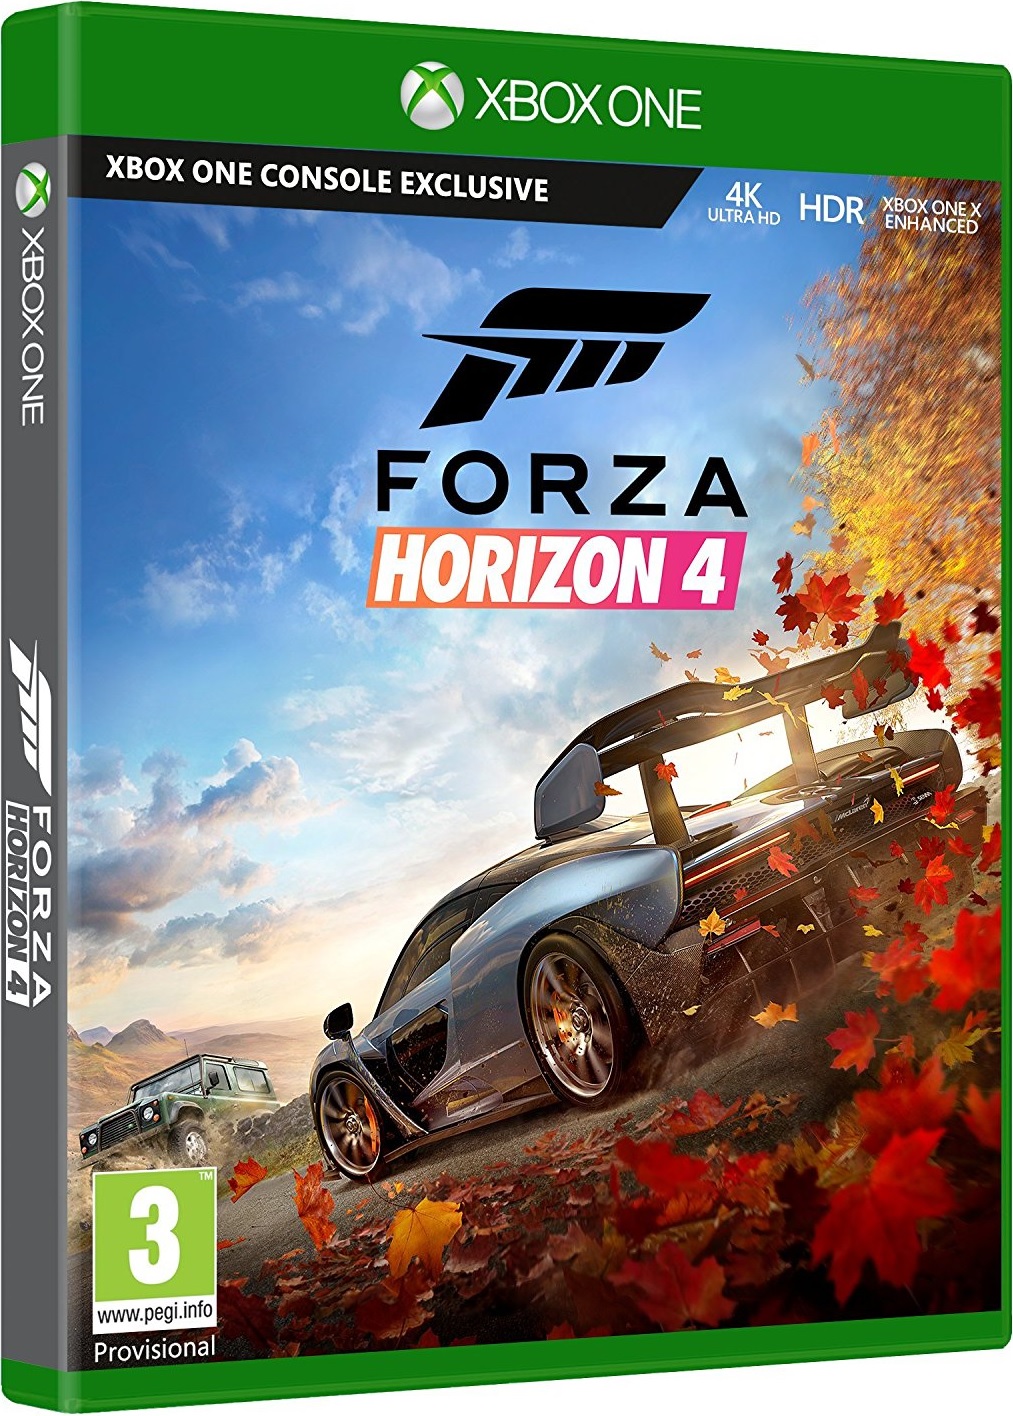 how to play forza horizon 2 pc